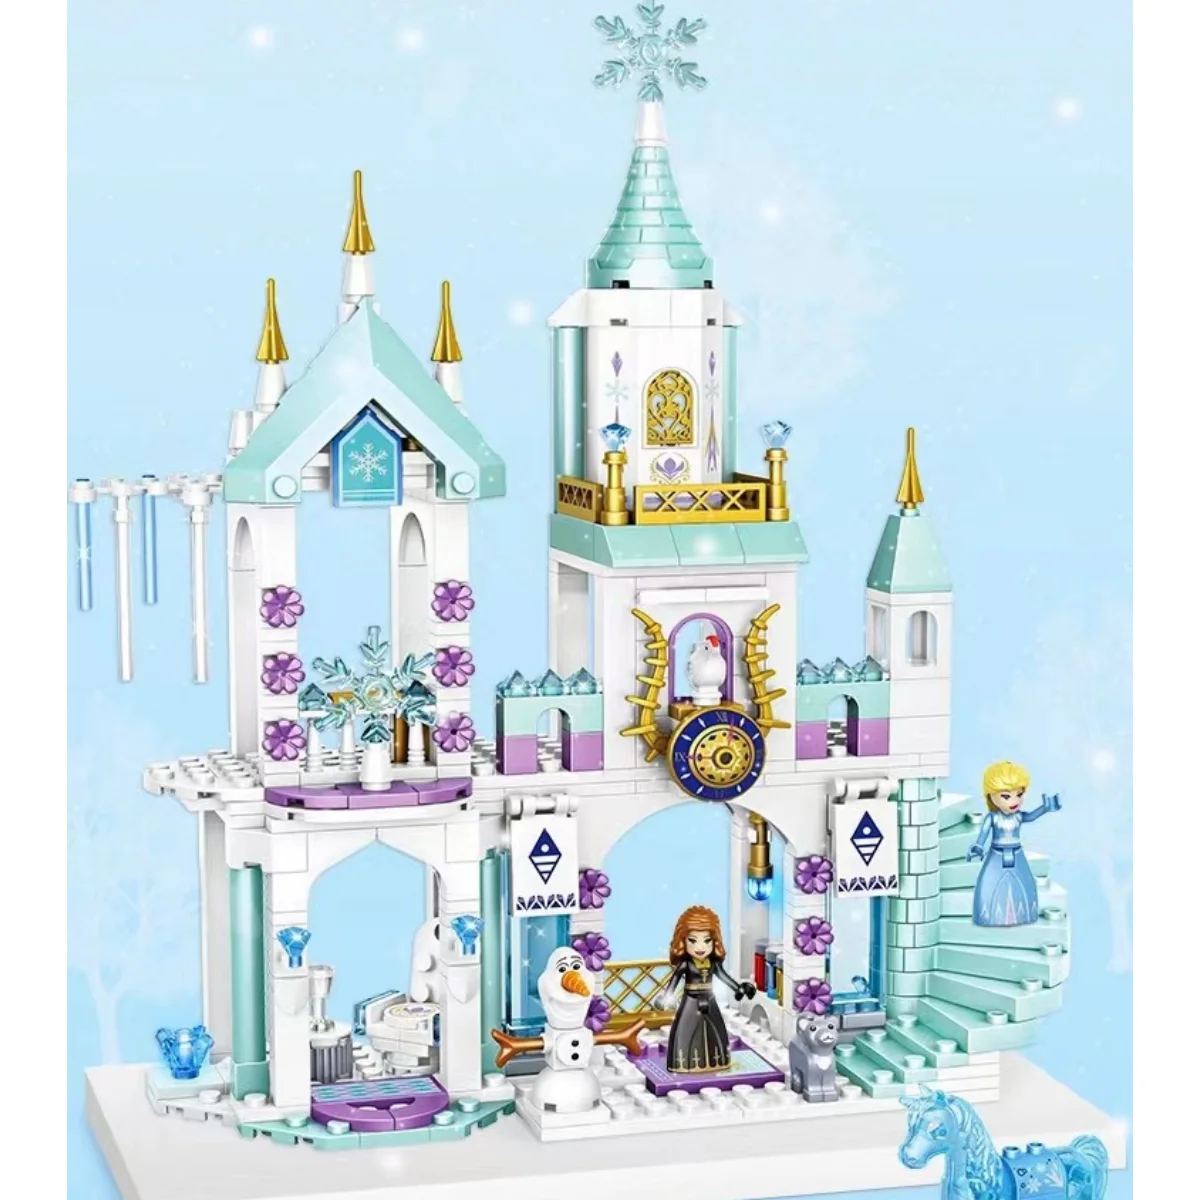 Disney Frozen Castle Building Block Elsa Princess Children's Toy Decoration Christmas Gift